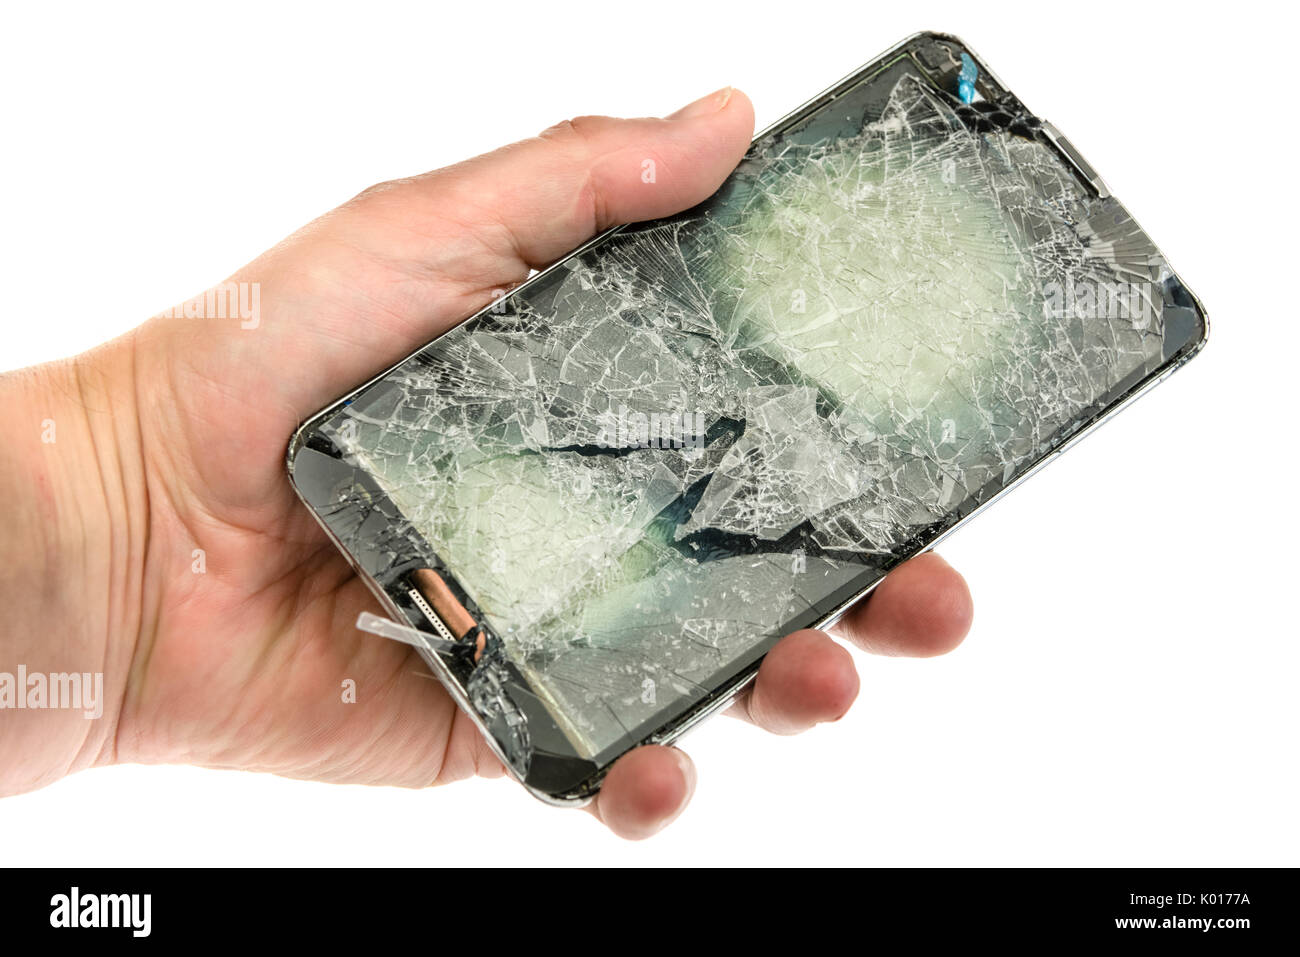 Teléfono móvil con un mal hecha añicos la pantalla después de una grave caída. Foto de stock